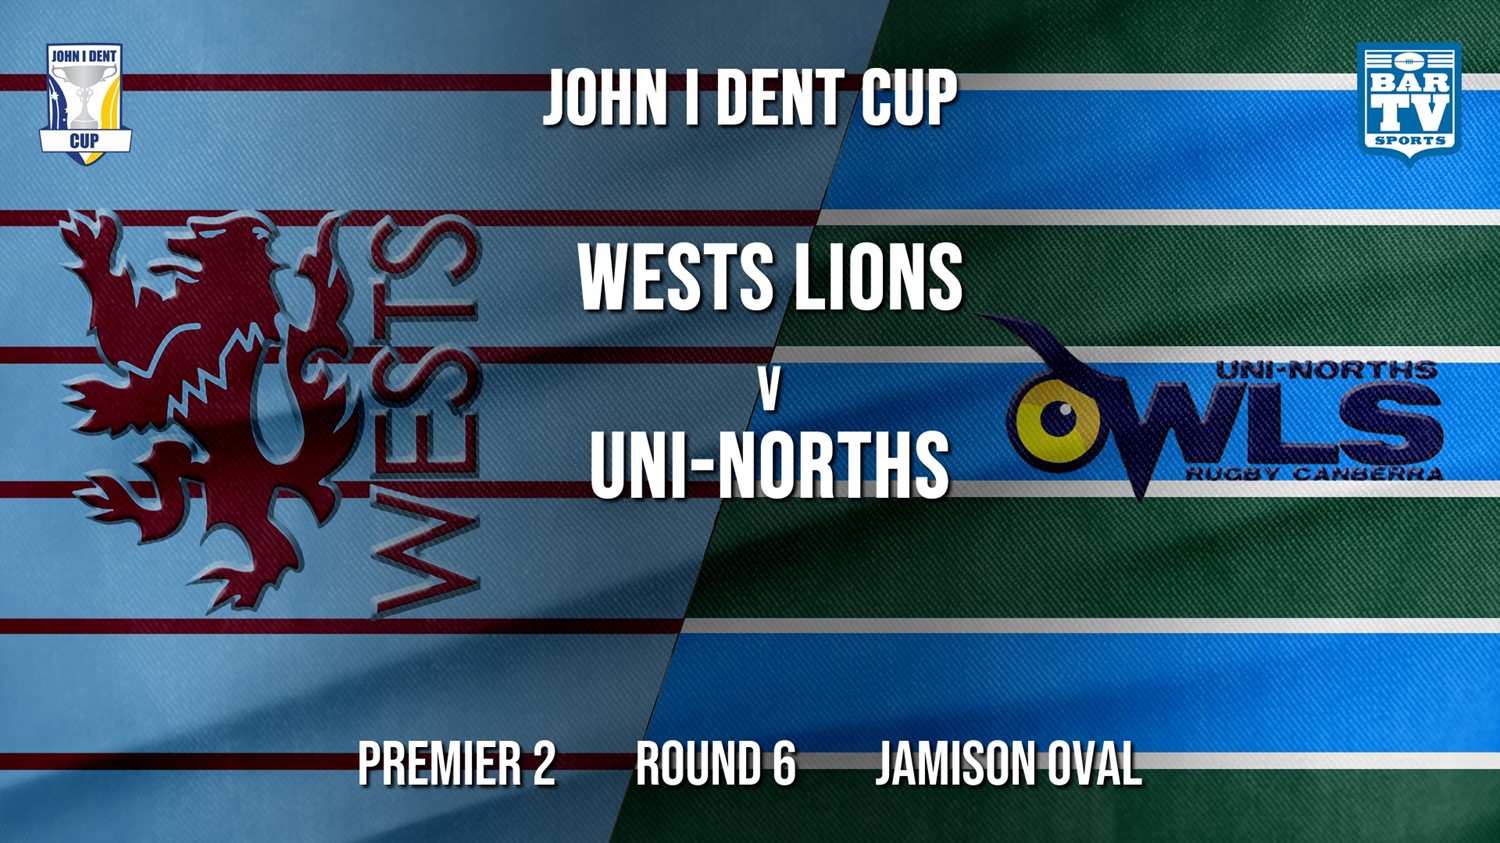 John I Dent Round 6 - Premier 2 - Wests Lions v UNI-Norths Minigame Slate Image